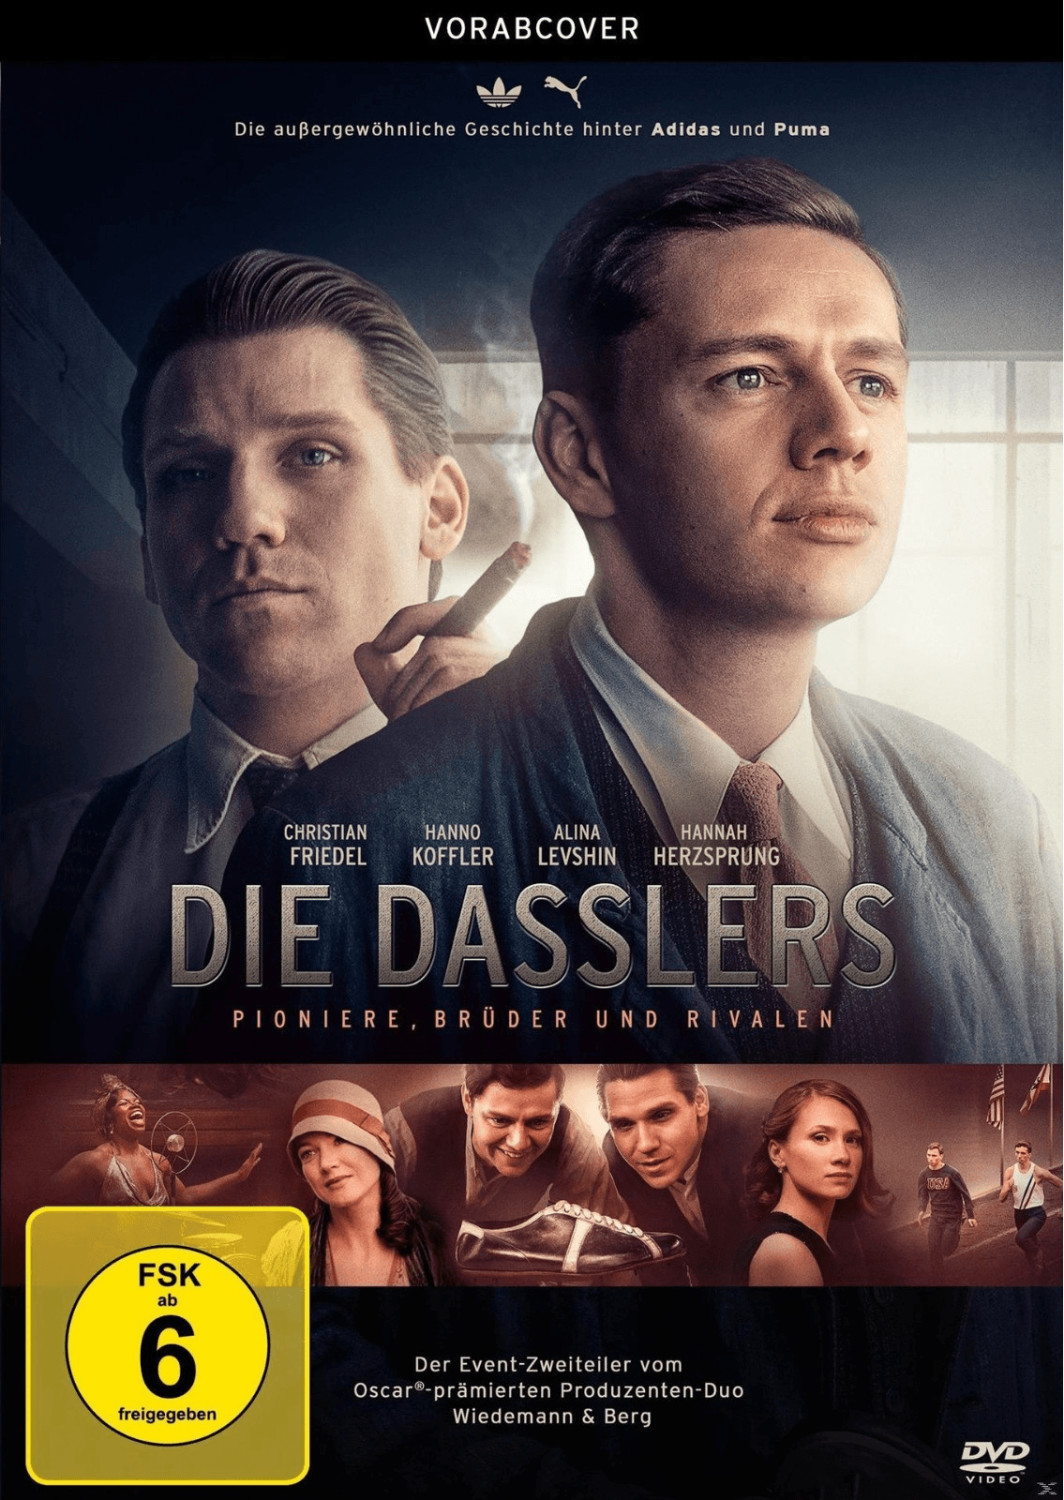 Die Dasslers - Pioniere, Brüder und Rivalen [DVD]